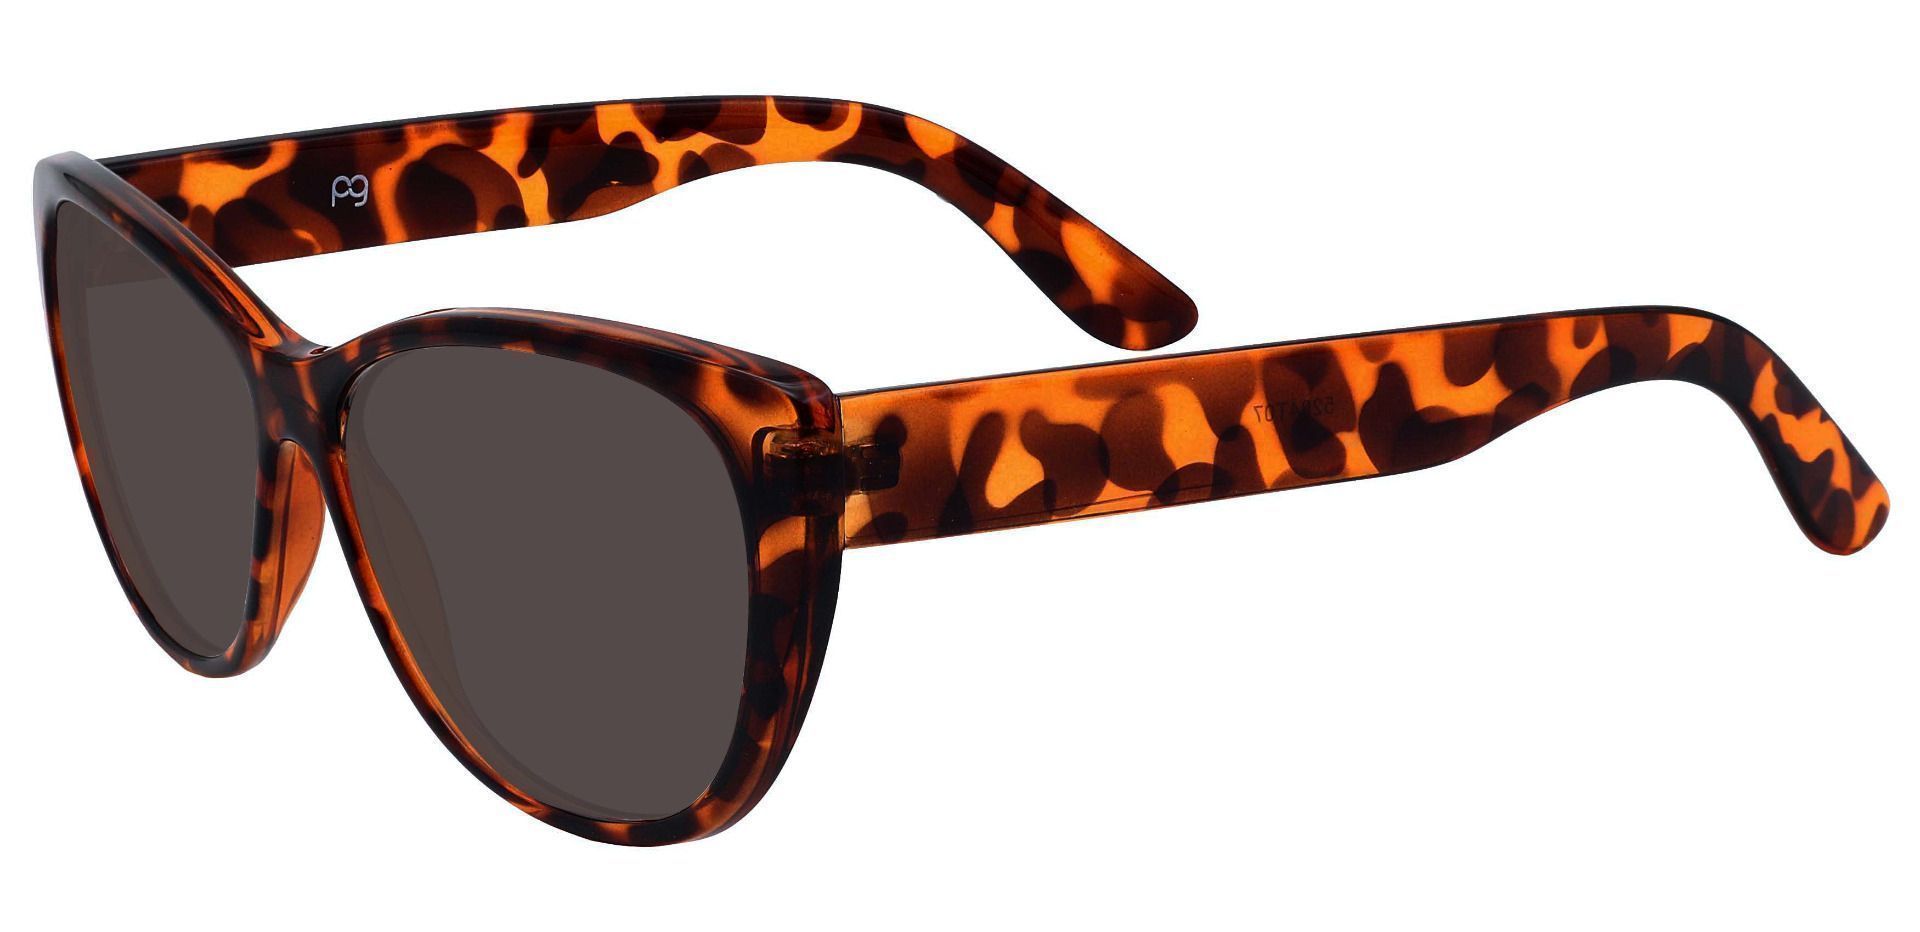 Lynn Cat-Eye Progressive Sunglasses - Tortoise Frame With Gray Lenses